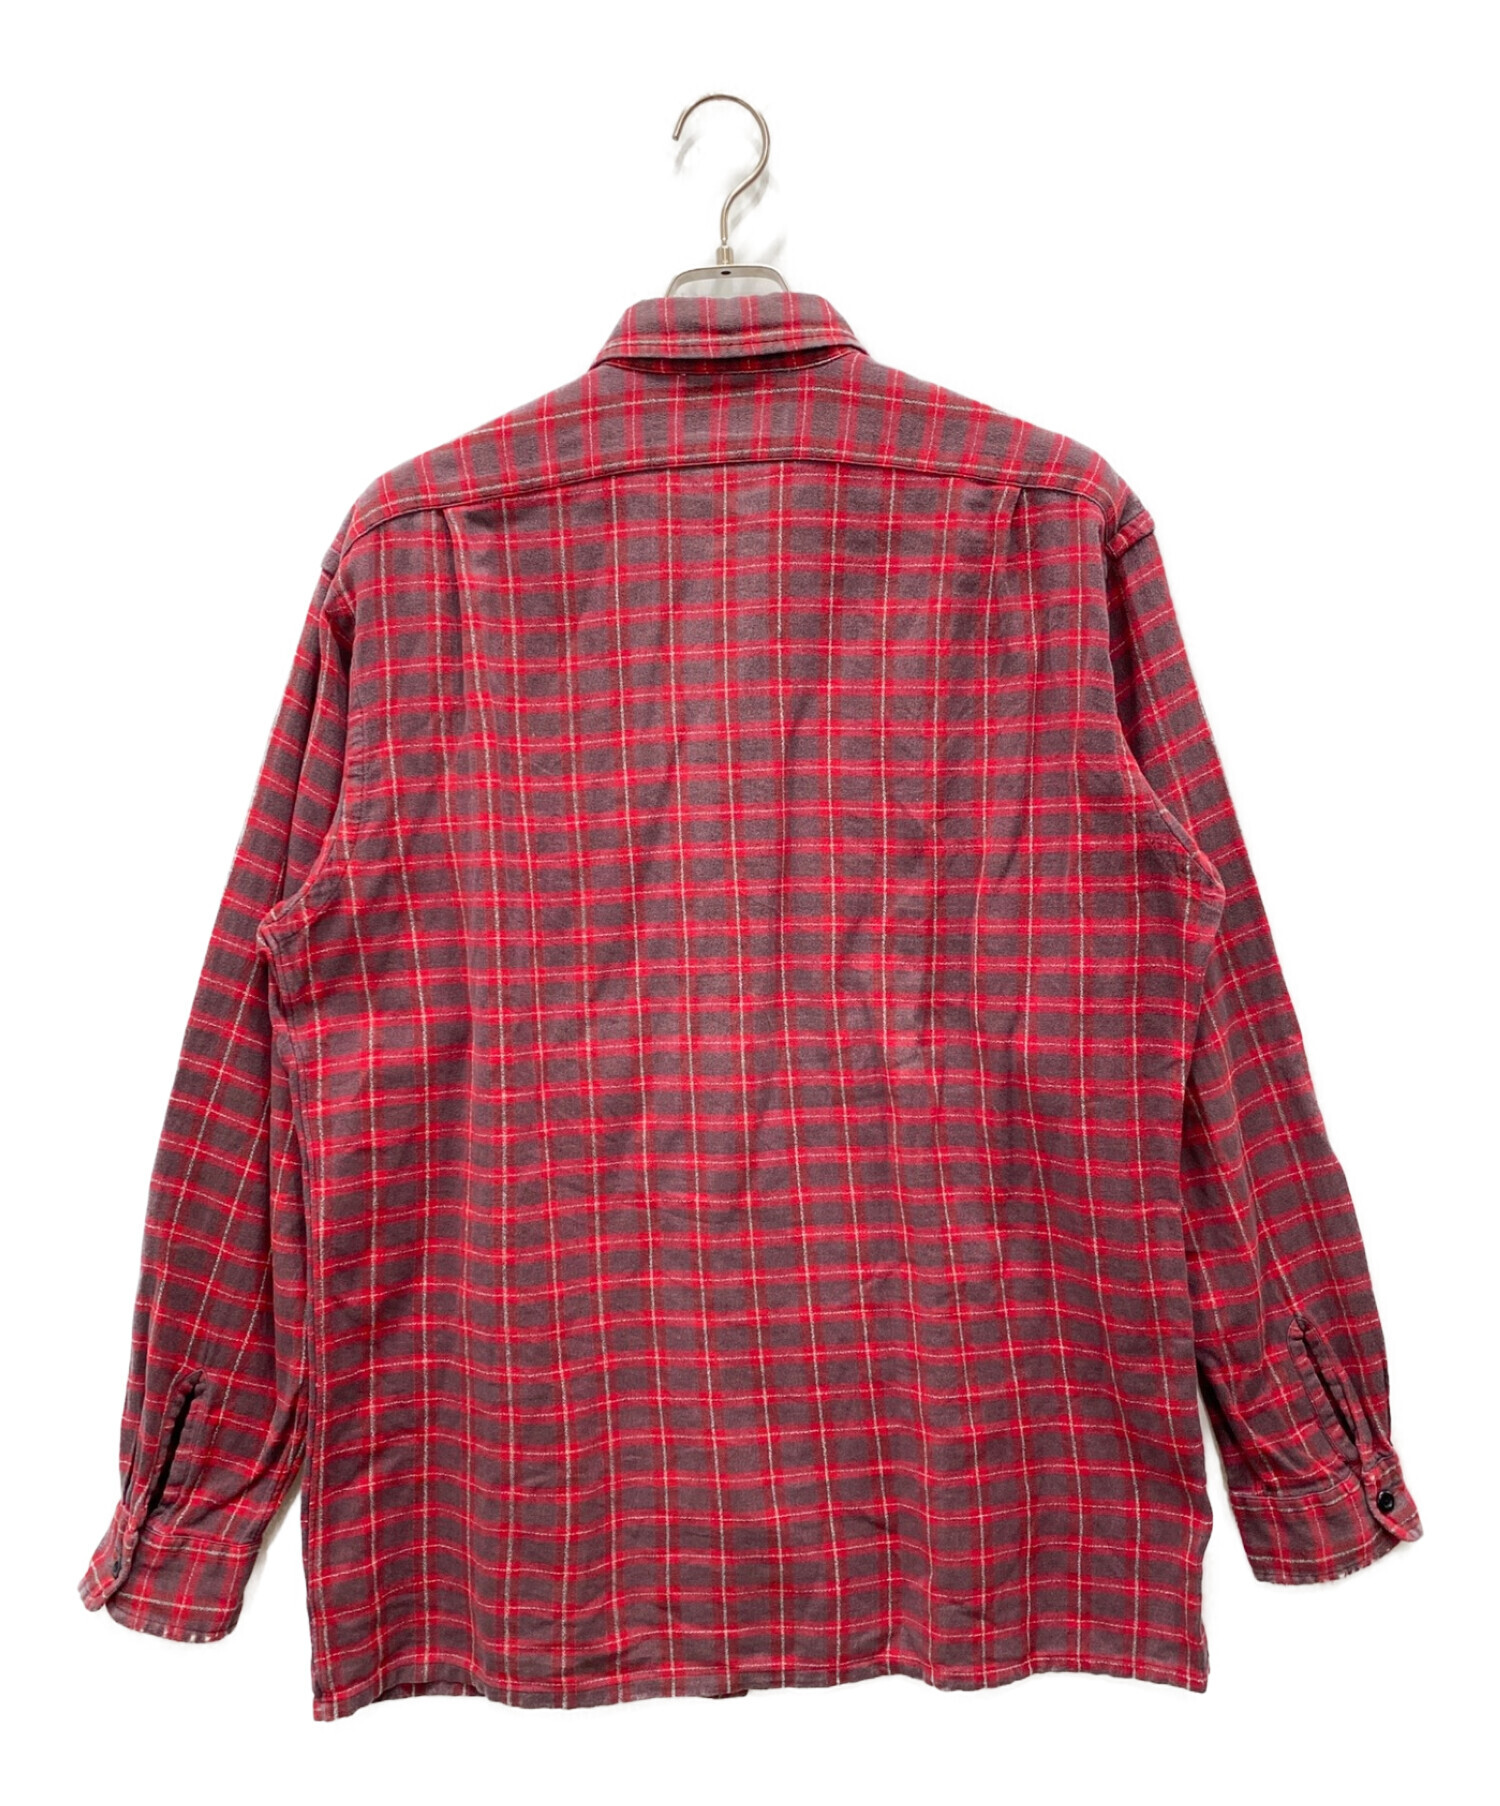 チェックシャツ 赤 サイズM - シャツ